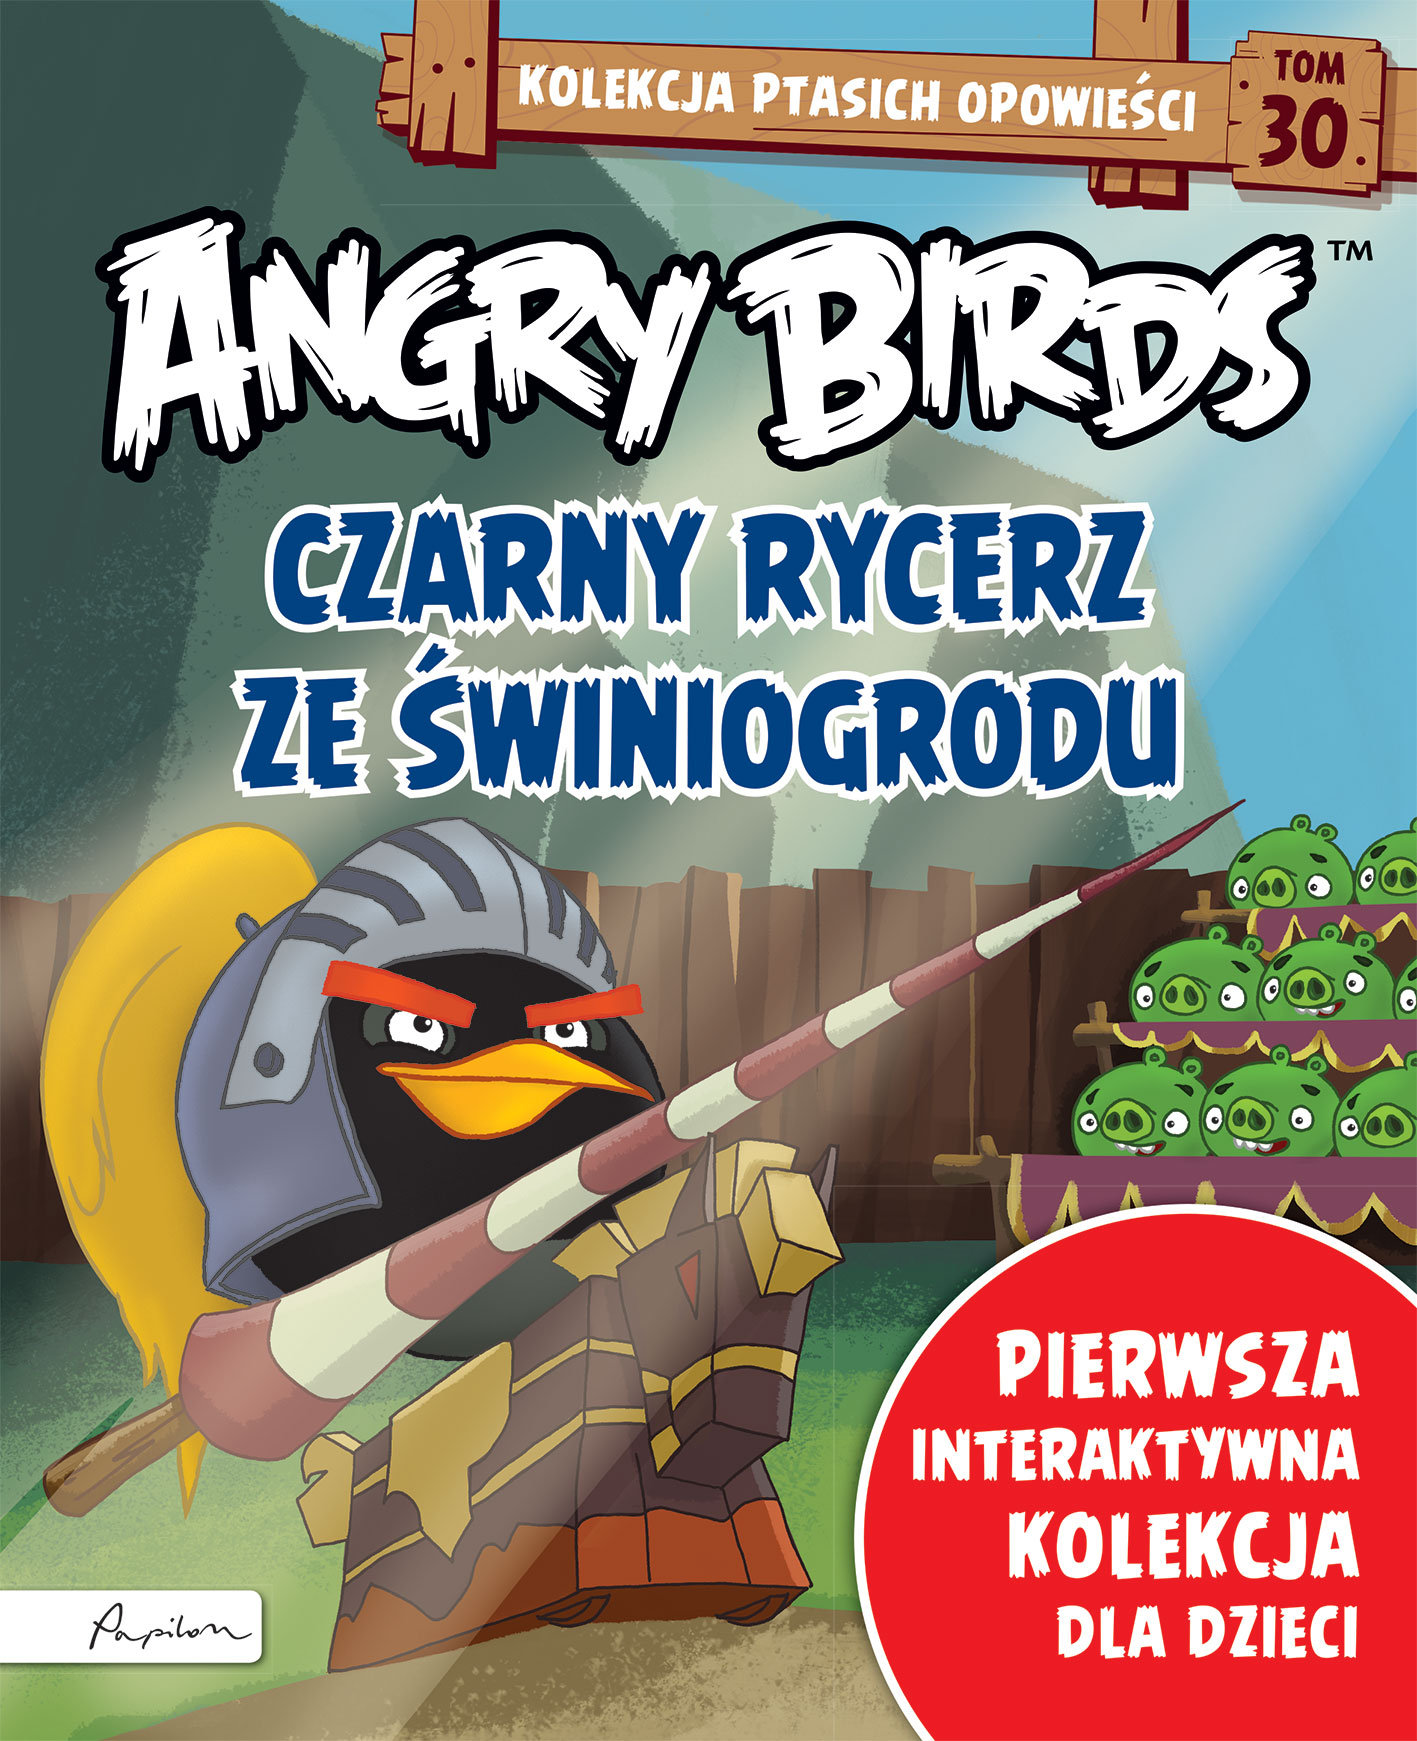 Angry Birds. Kolekcja ptasich opowieści 30. Czarny rycerz ze Świnogrodu. 